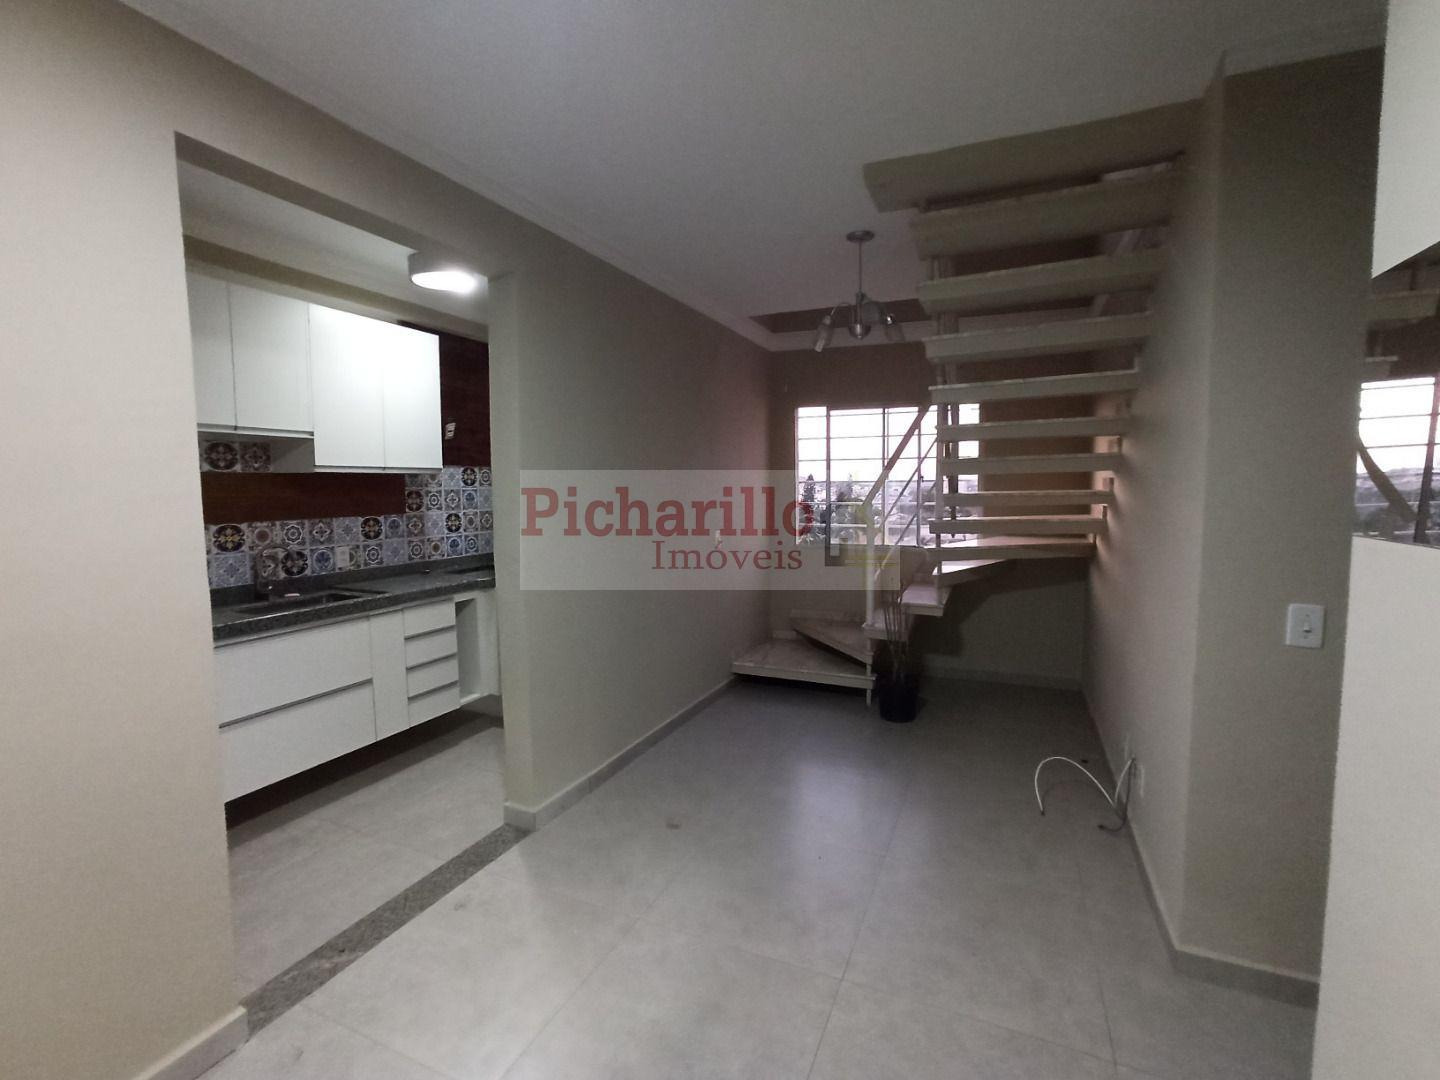 Cobertura com 133 m² - 3 dormitórios (1 suíte) com Ofurô e churrasqueira. Próximo a USP e Santa Casa - São Carlos/SP